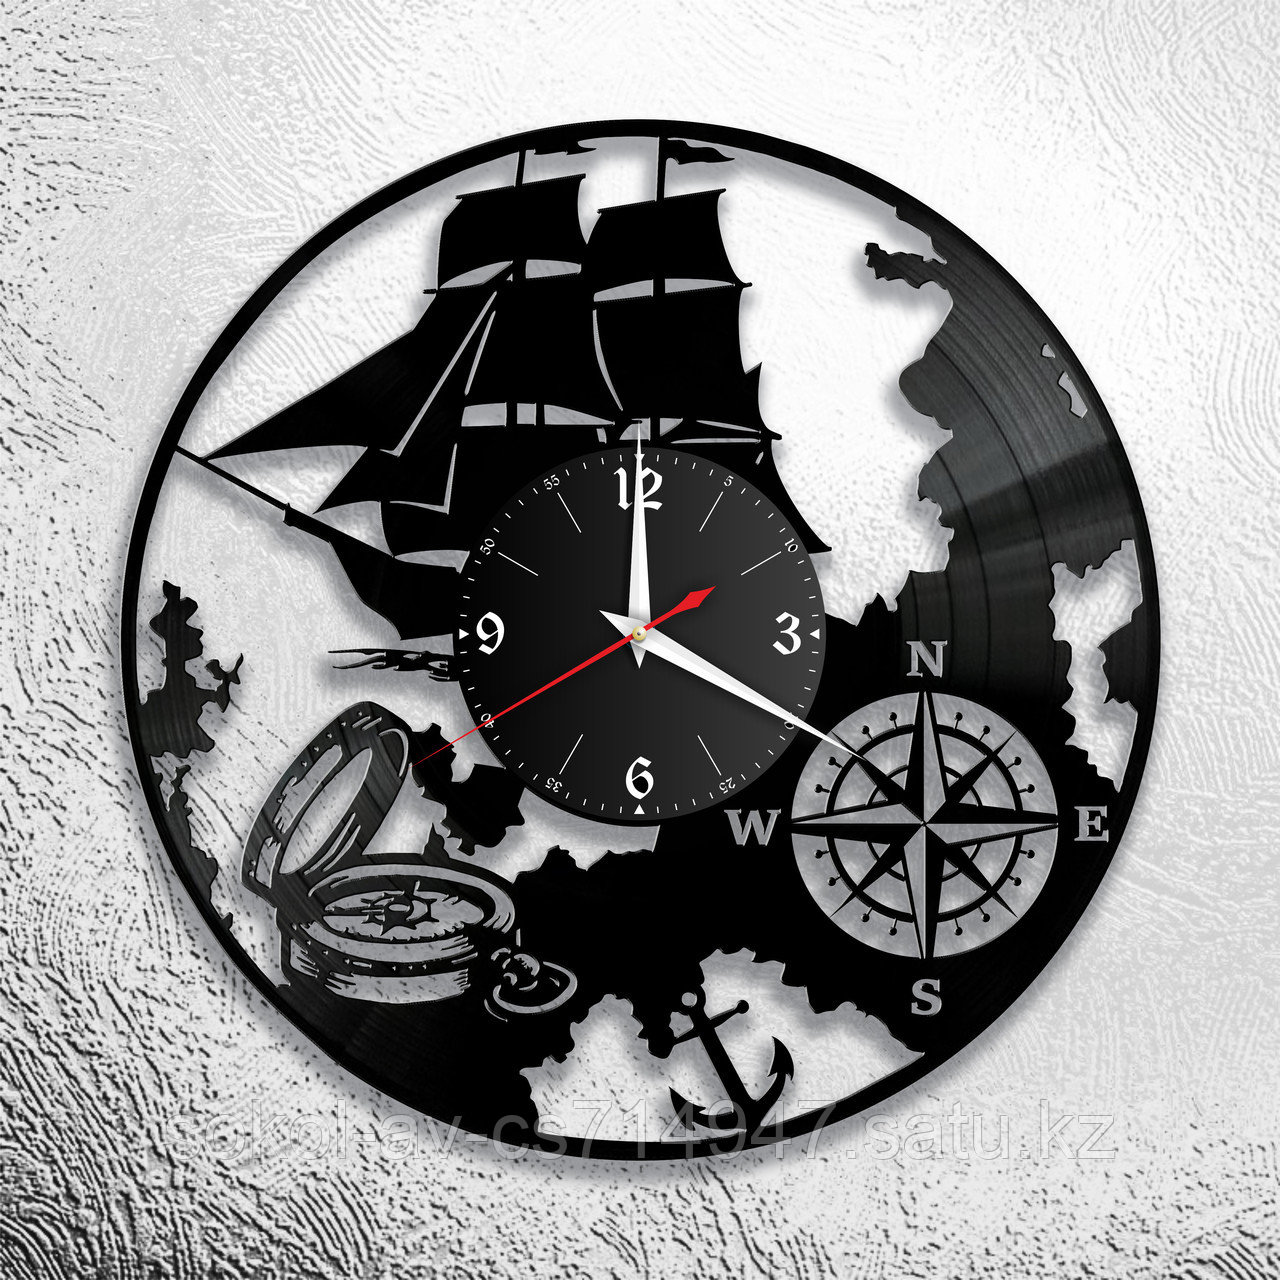 Настенные часы из пластинки в морском стиле (корабль, якорь) подарок моряку, матросу, капитану корабля, 1076